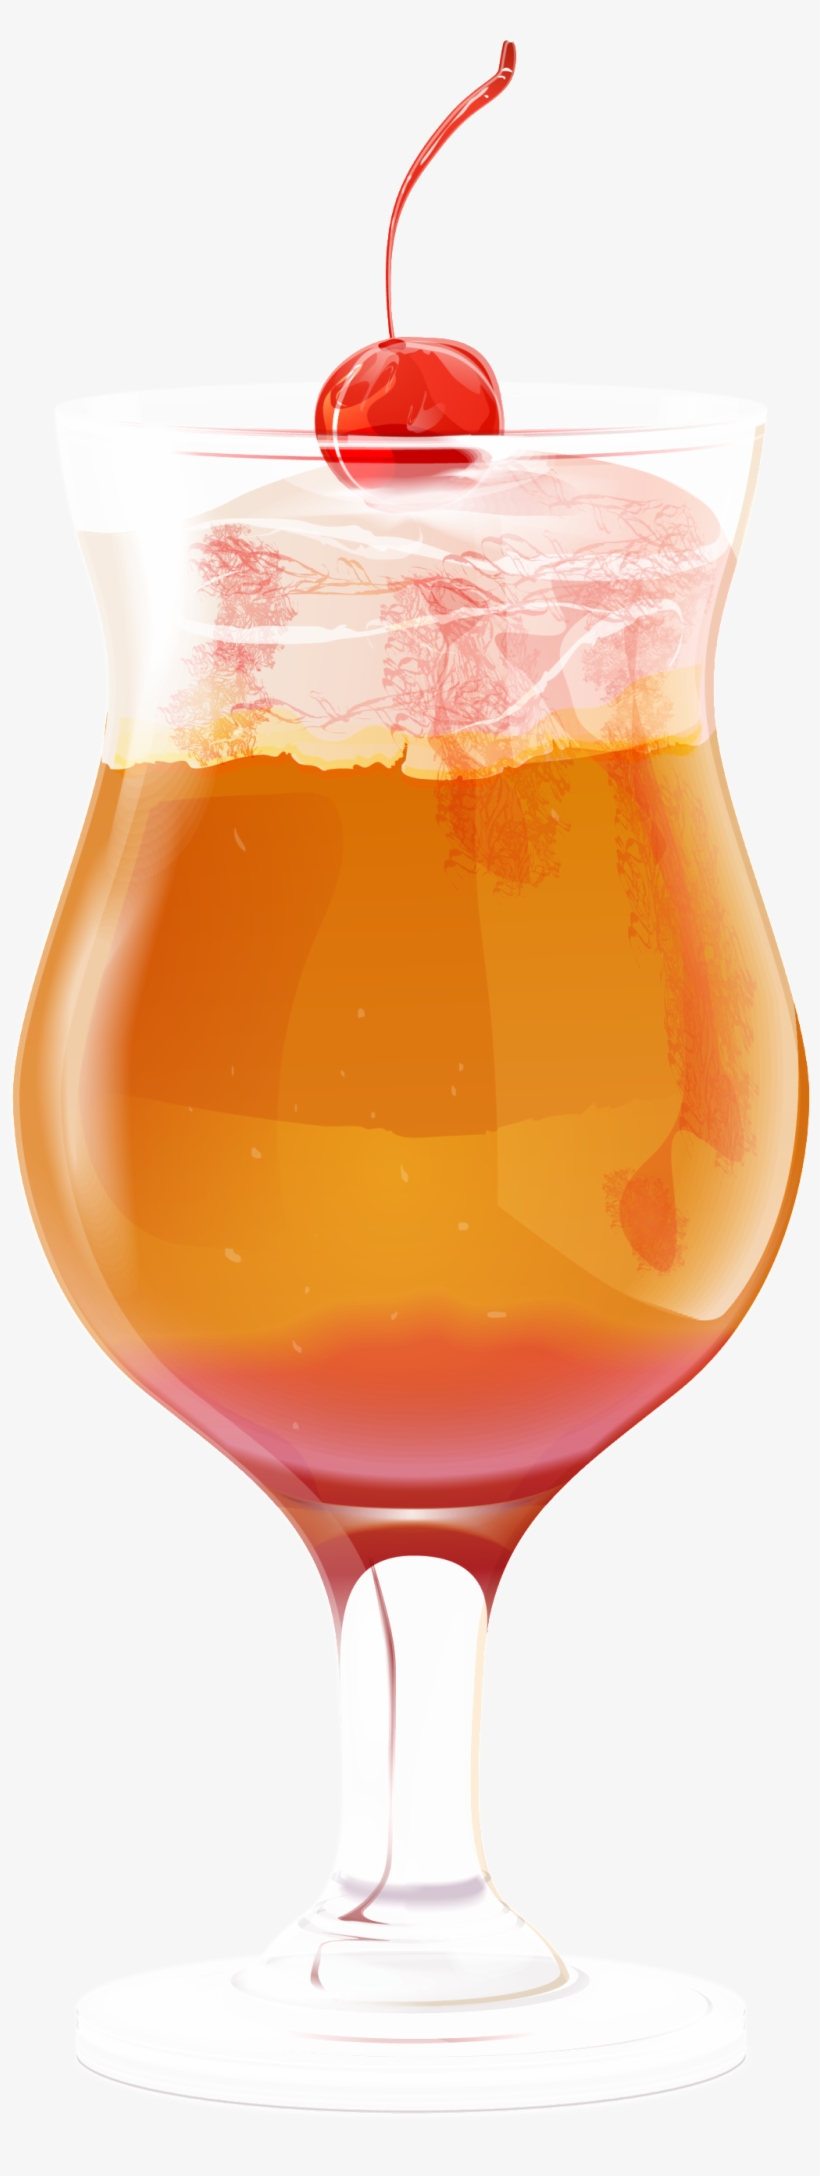 Cool Summer Refreshing Orange Juice Transparent Drink, transparent png #8699665